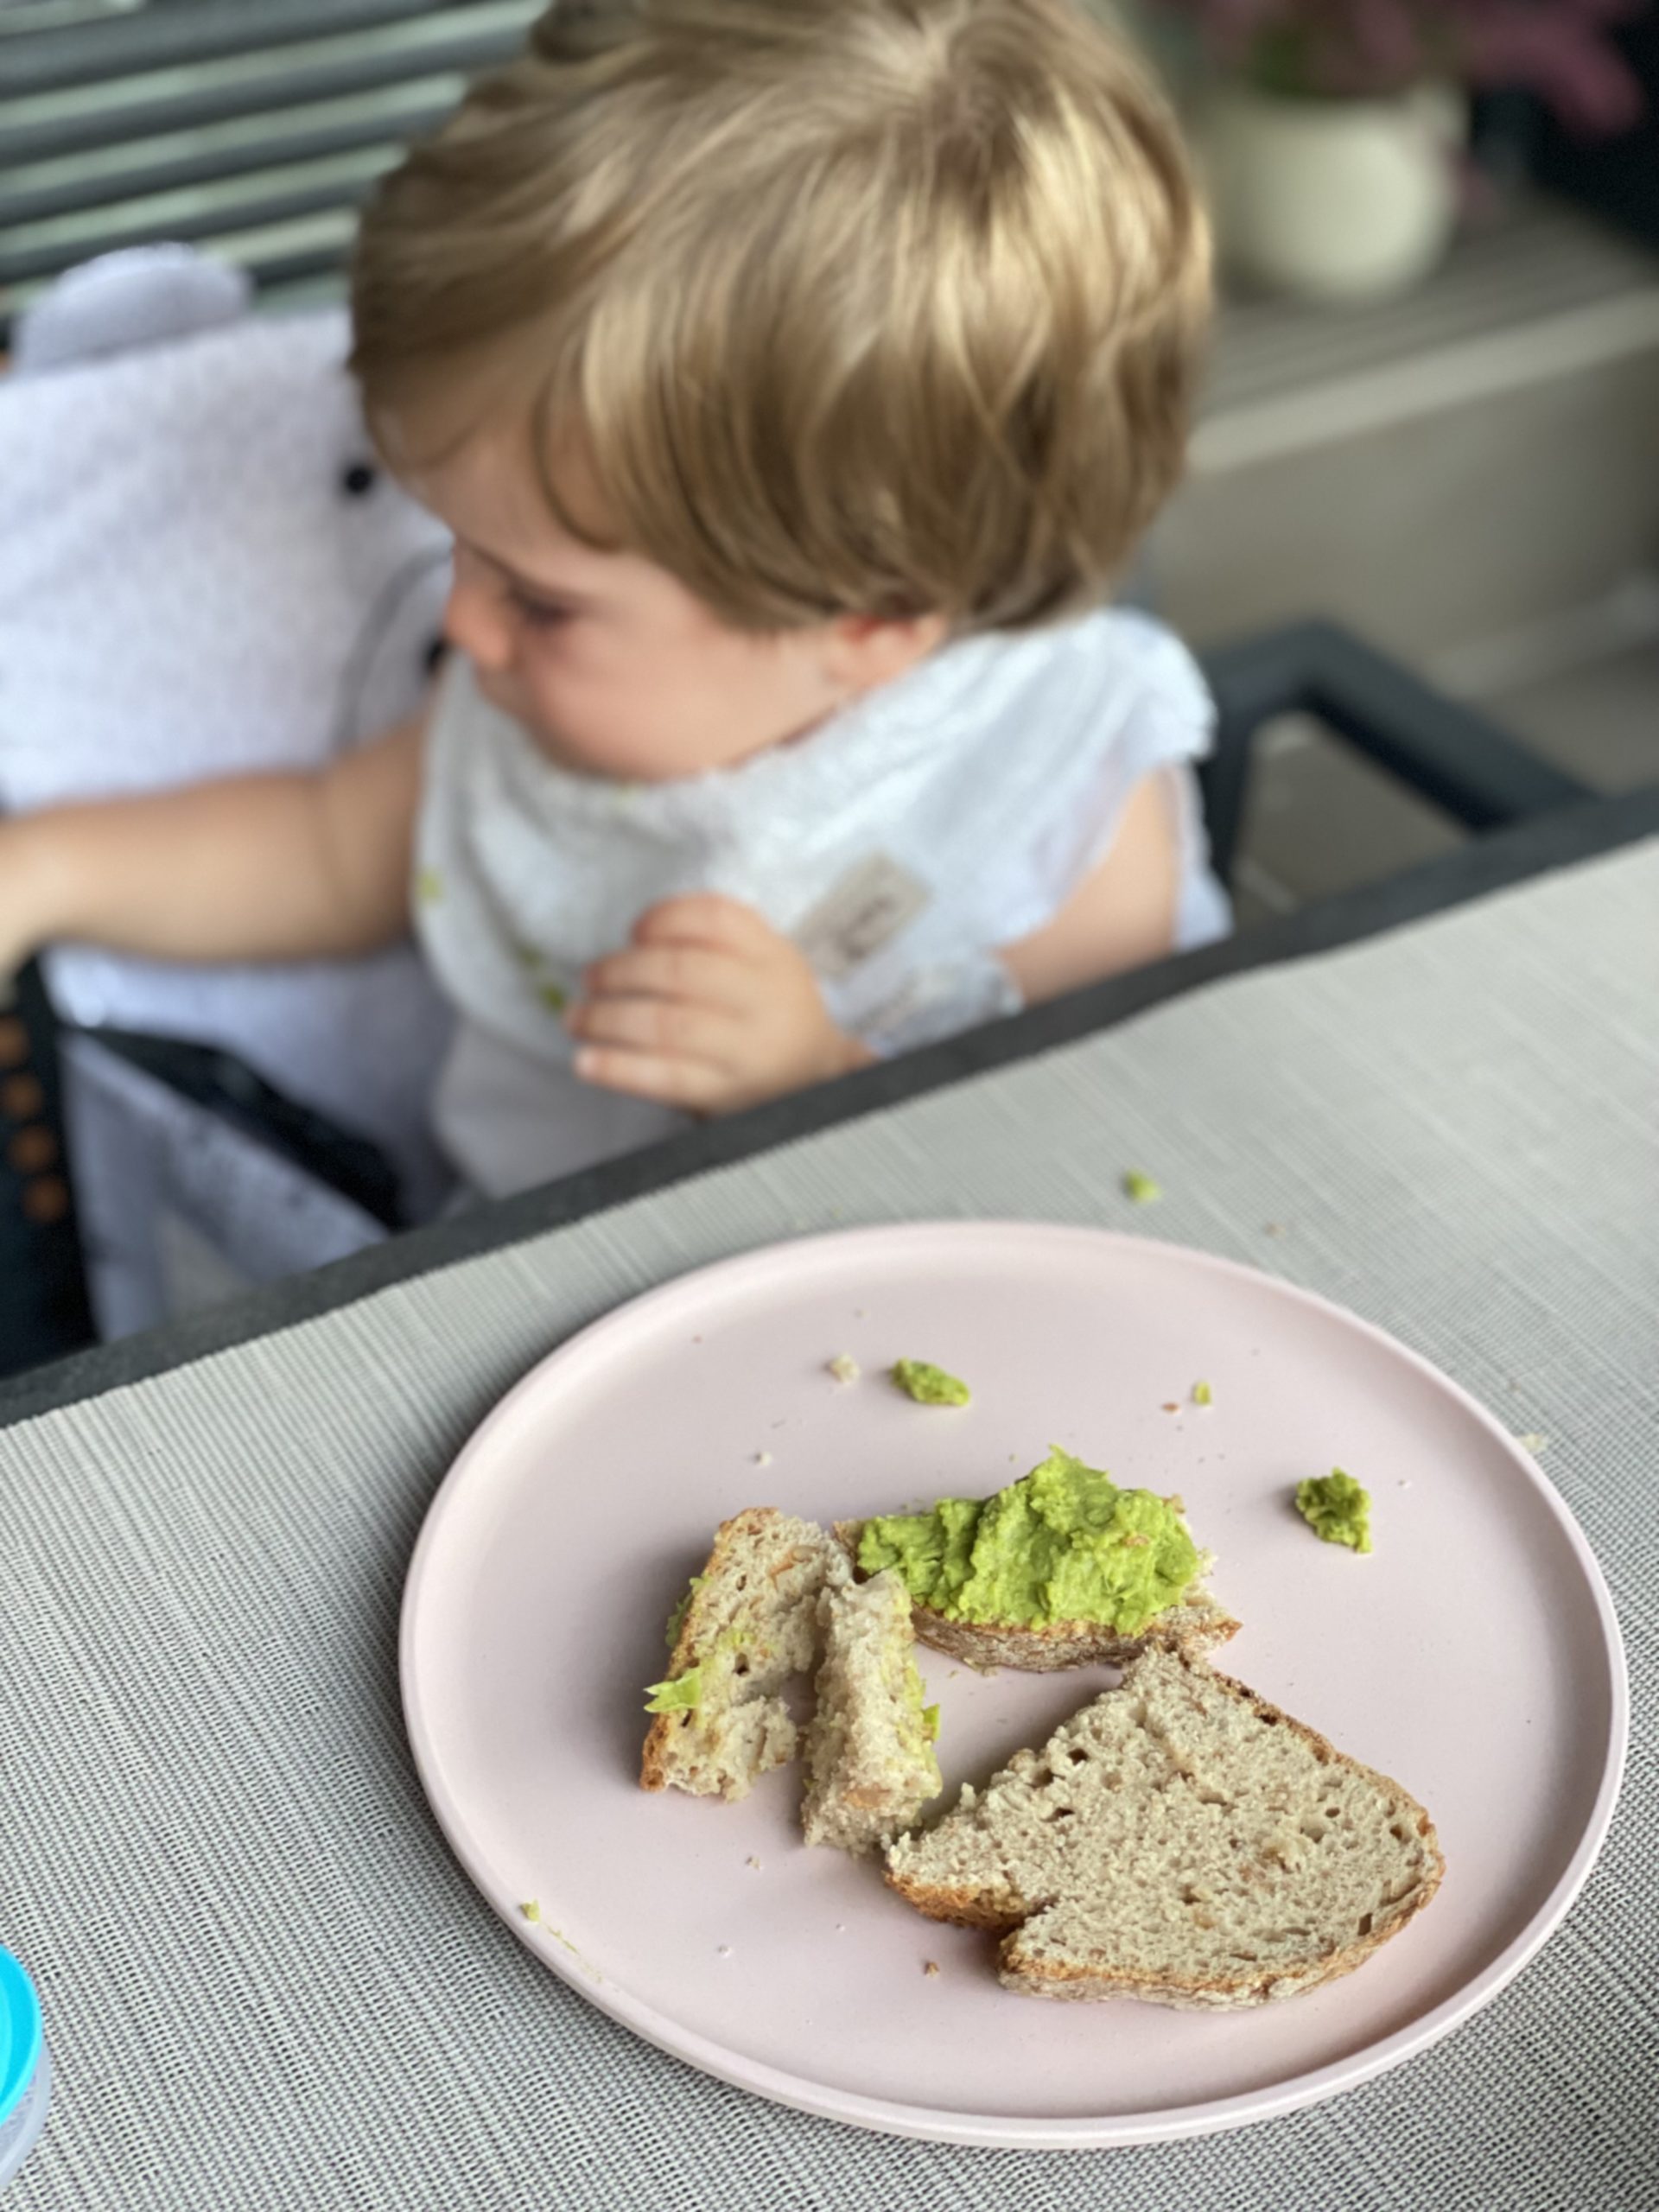 Nutriendo mi Bebé  ¿Qué comer en un restaurante con tu bebé?